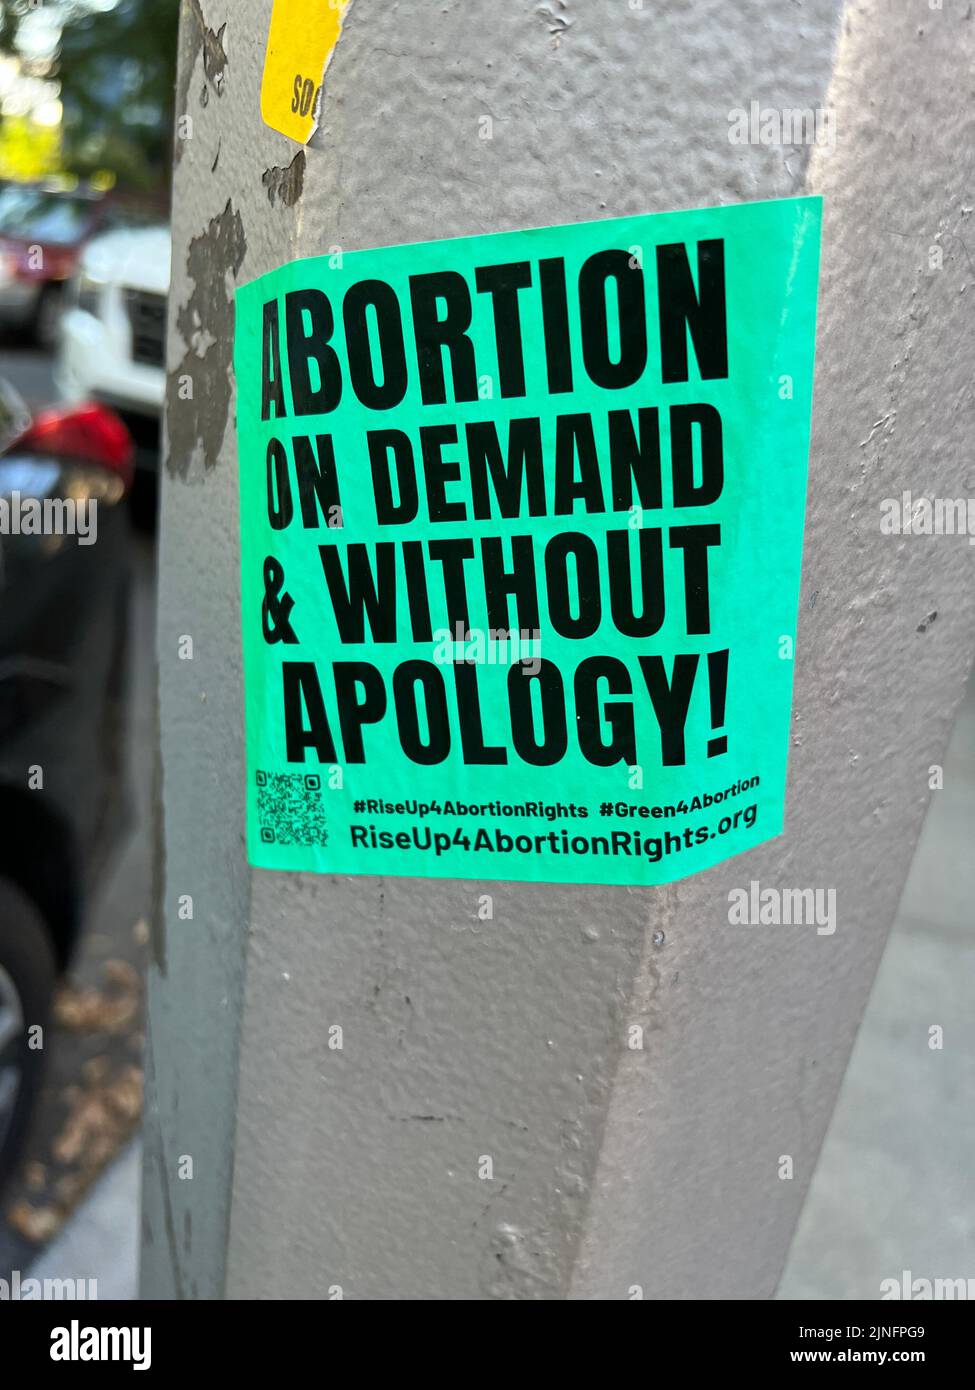 Pegatina Pro-Choice, abortion on demand en un poste ligero en un barrio residencial de Brooklyn, Nueva York. Foto de stock